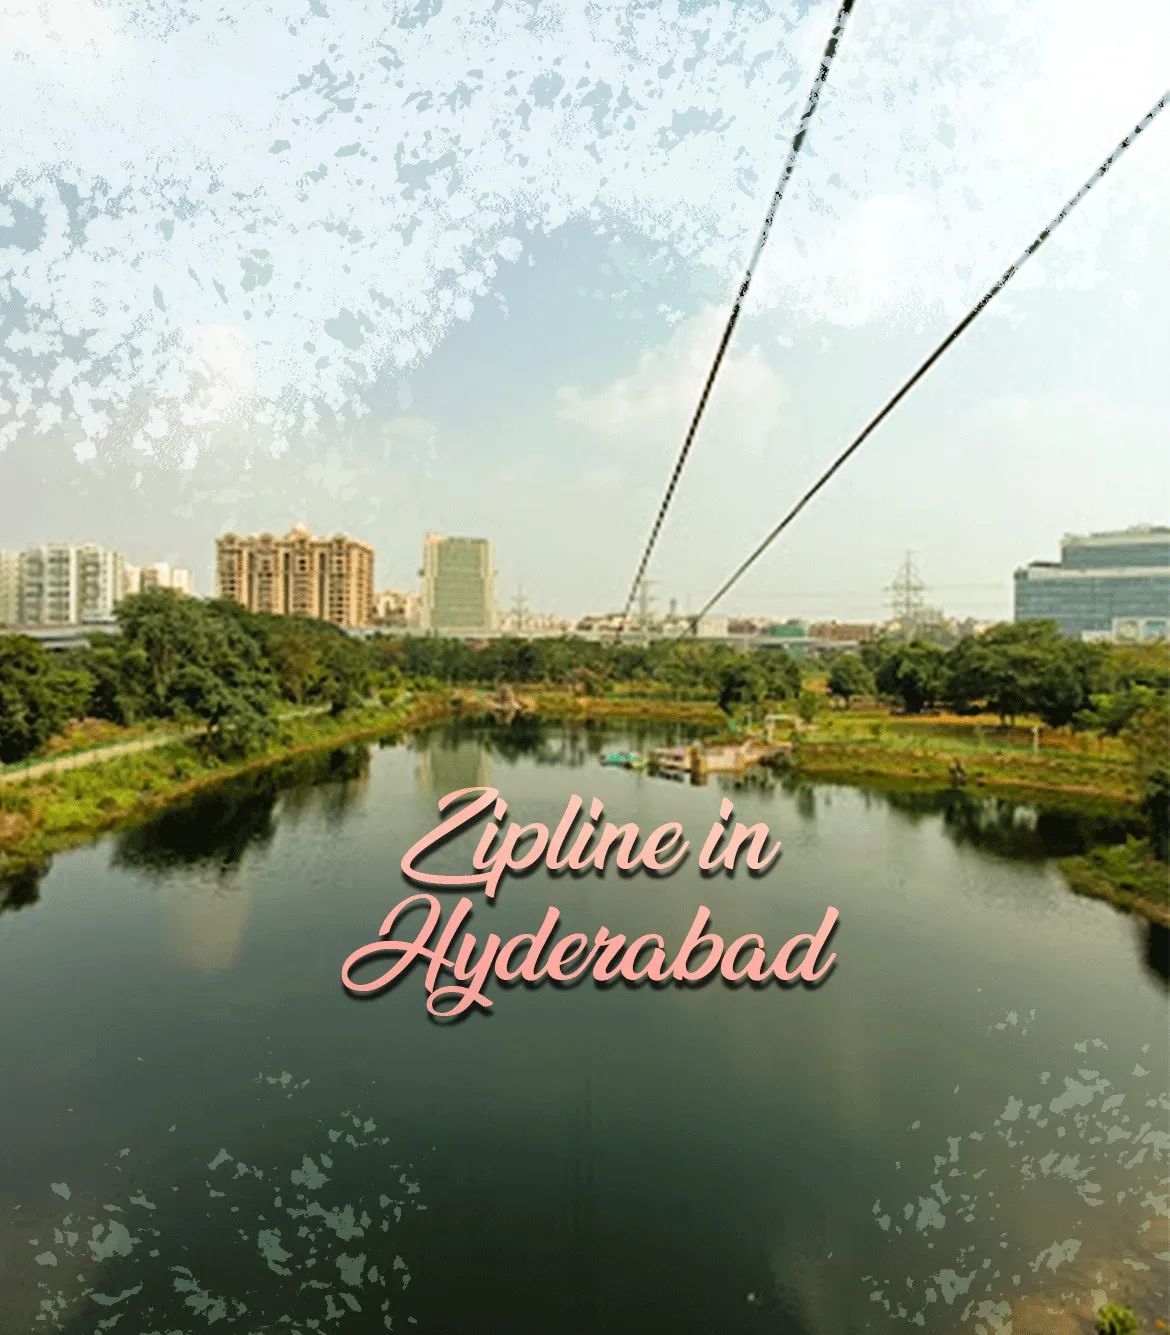 Zipline in Hyderabad